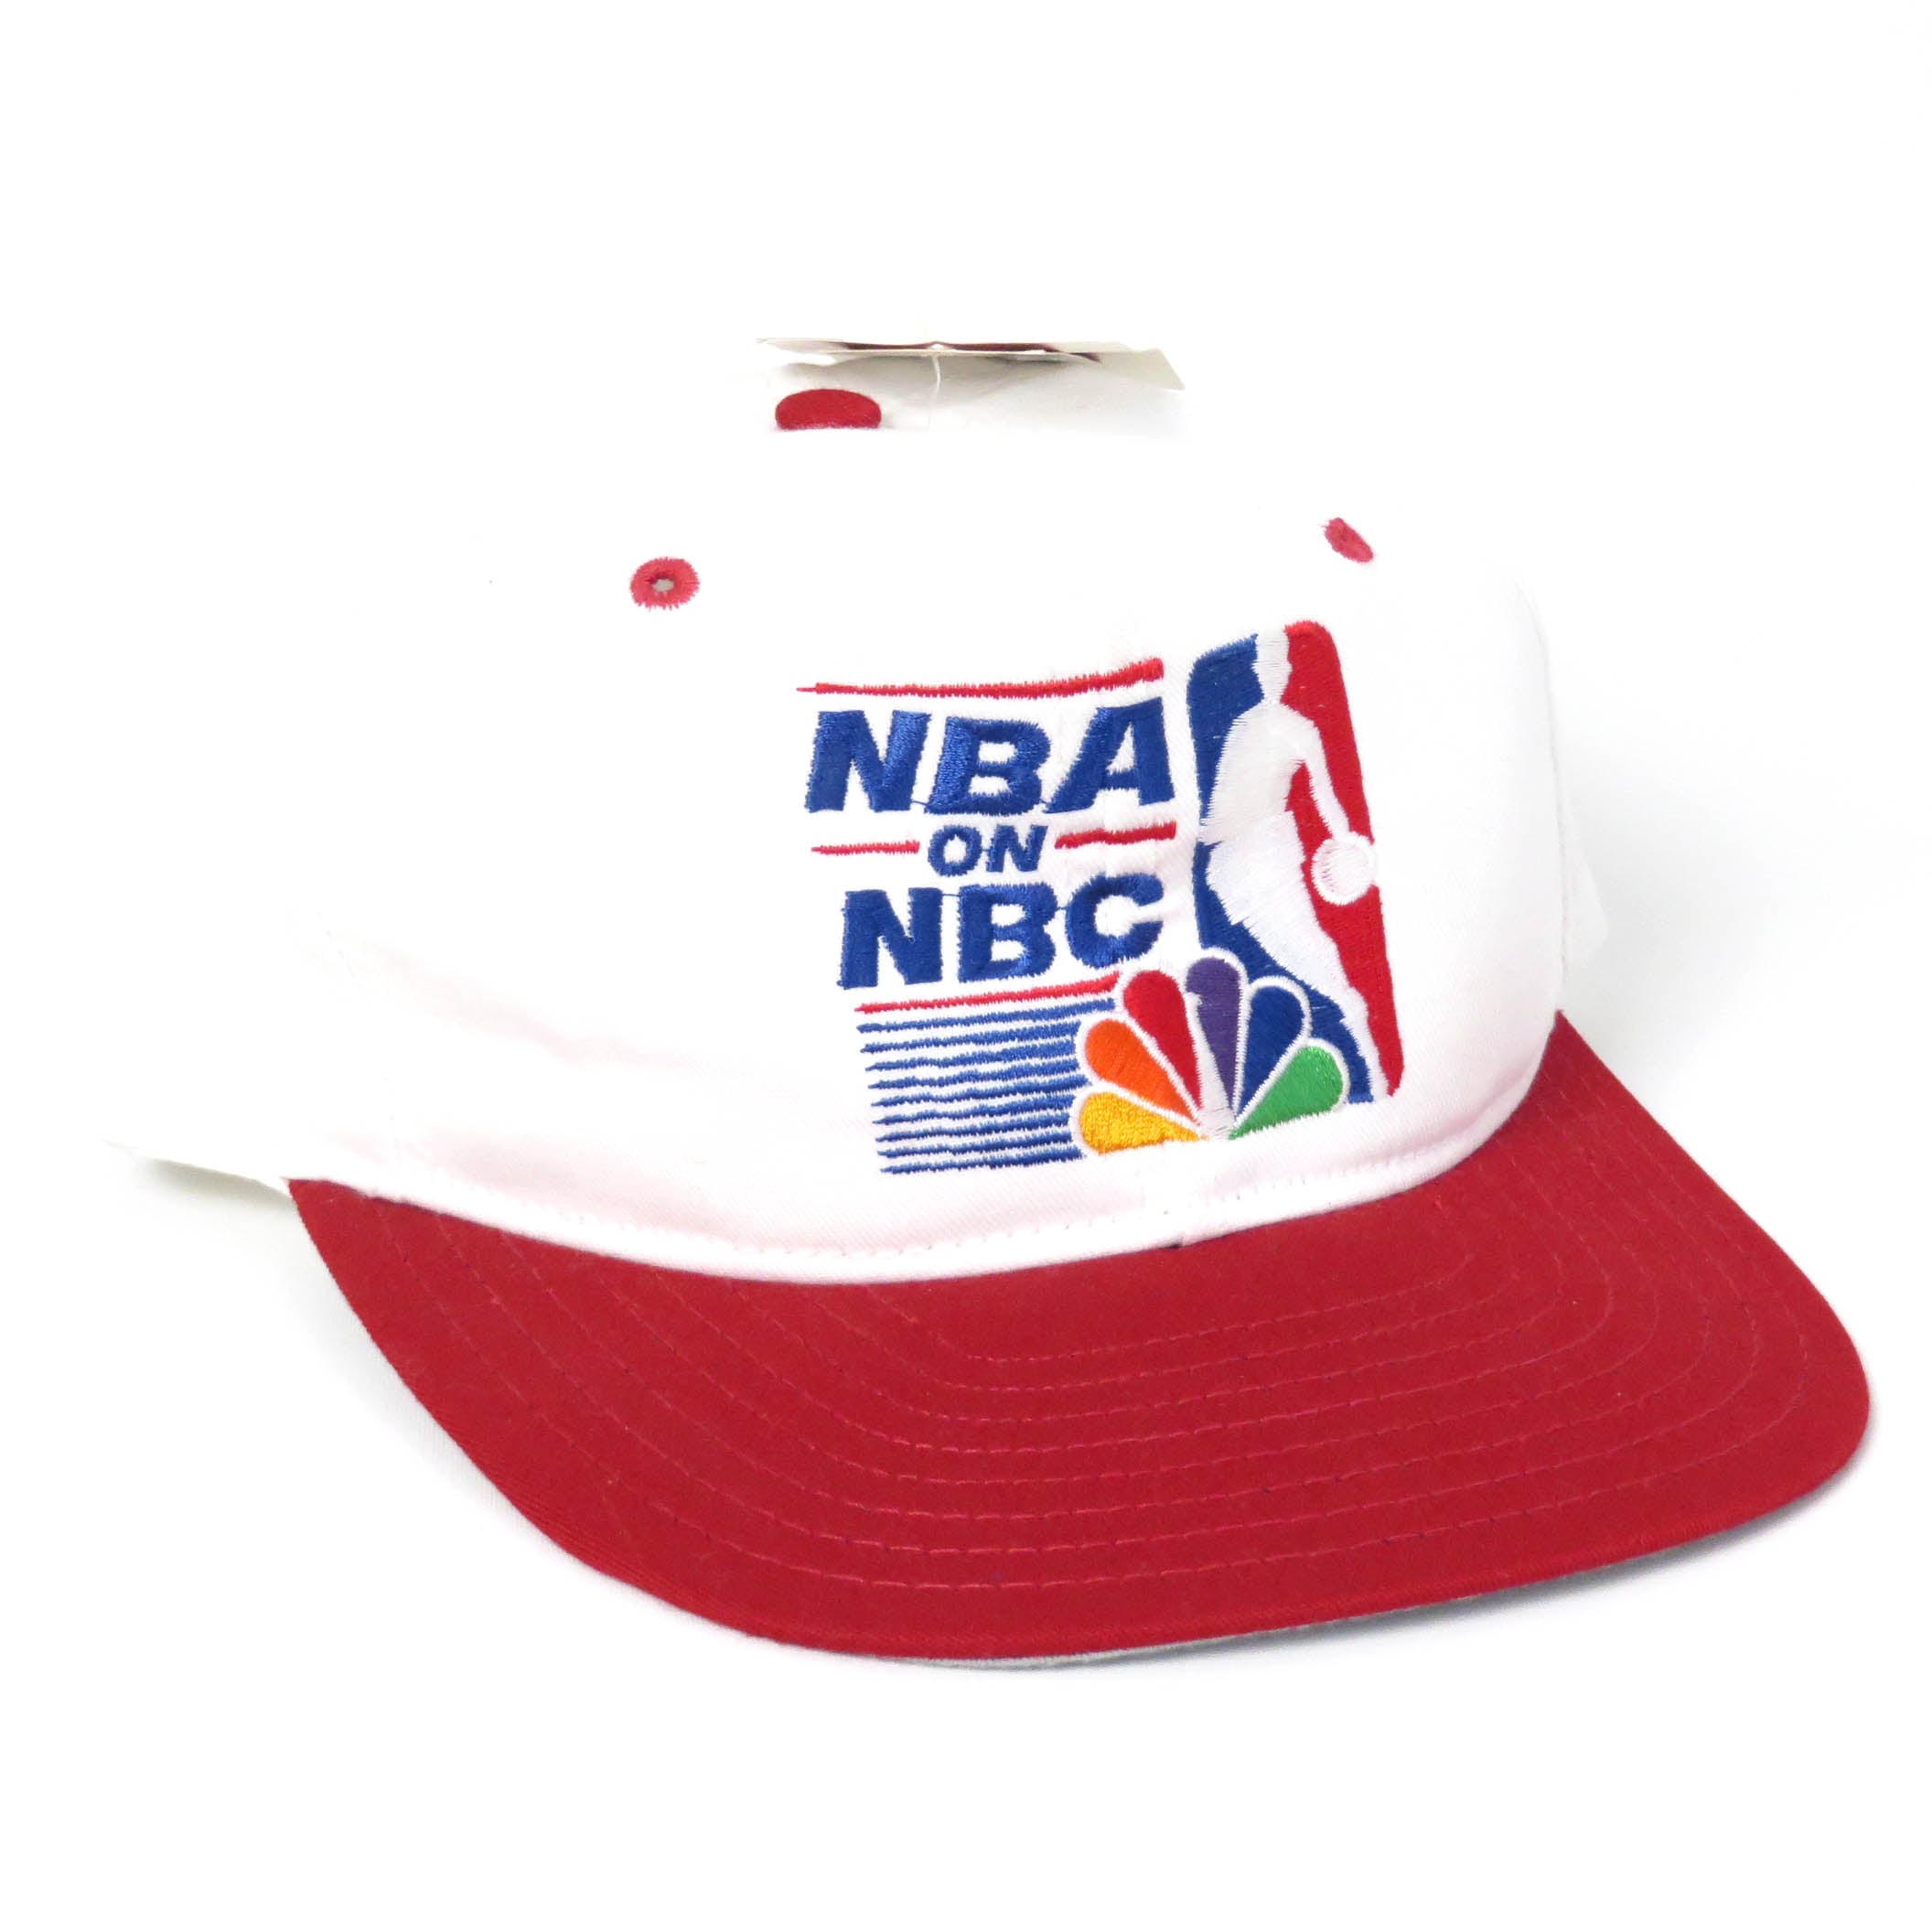 Vintage NBA on NBC Snapback Hat